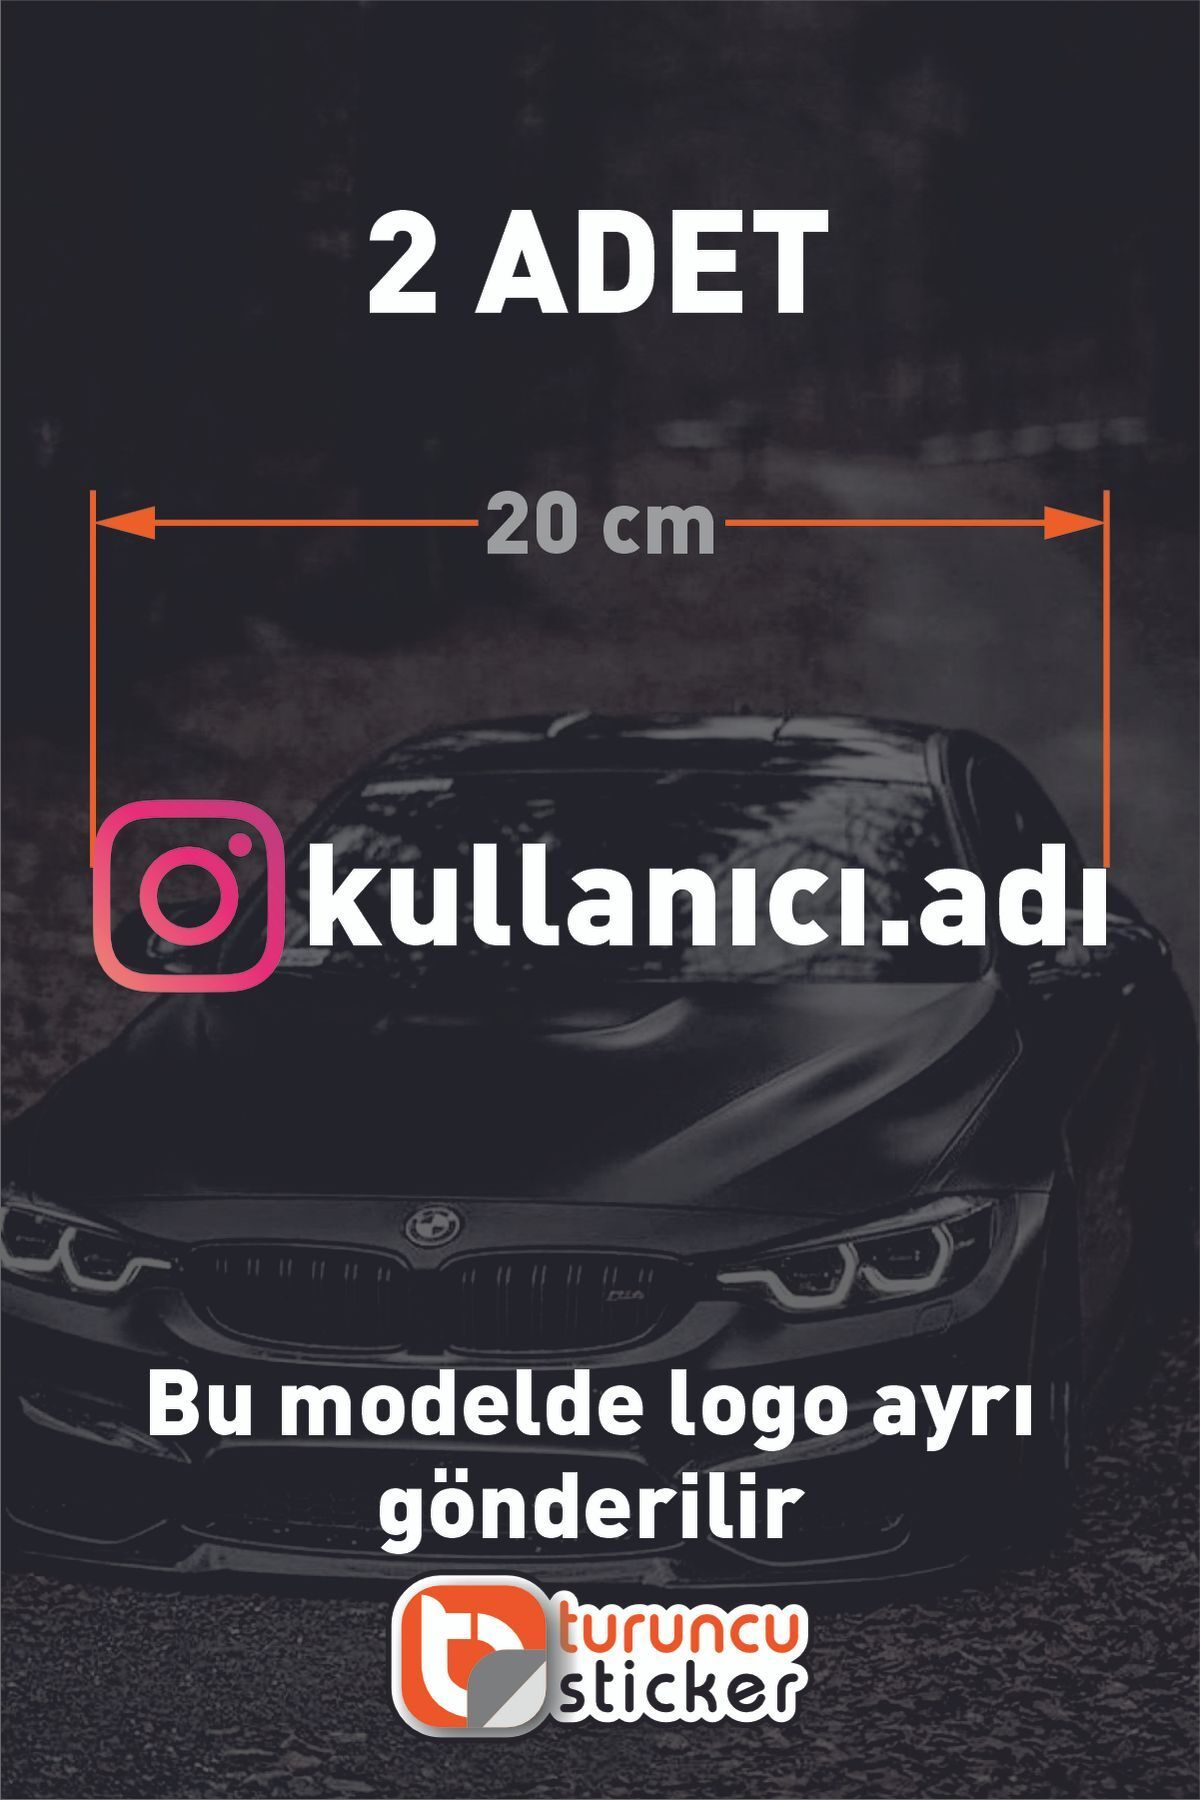 Turuncu Instagram Logolu Kullanıcı Adı - 2 Adet 20 Cm -   Araç Kelebek Cam Sticker Etiketi Folyo Kesim